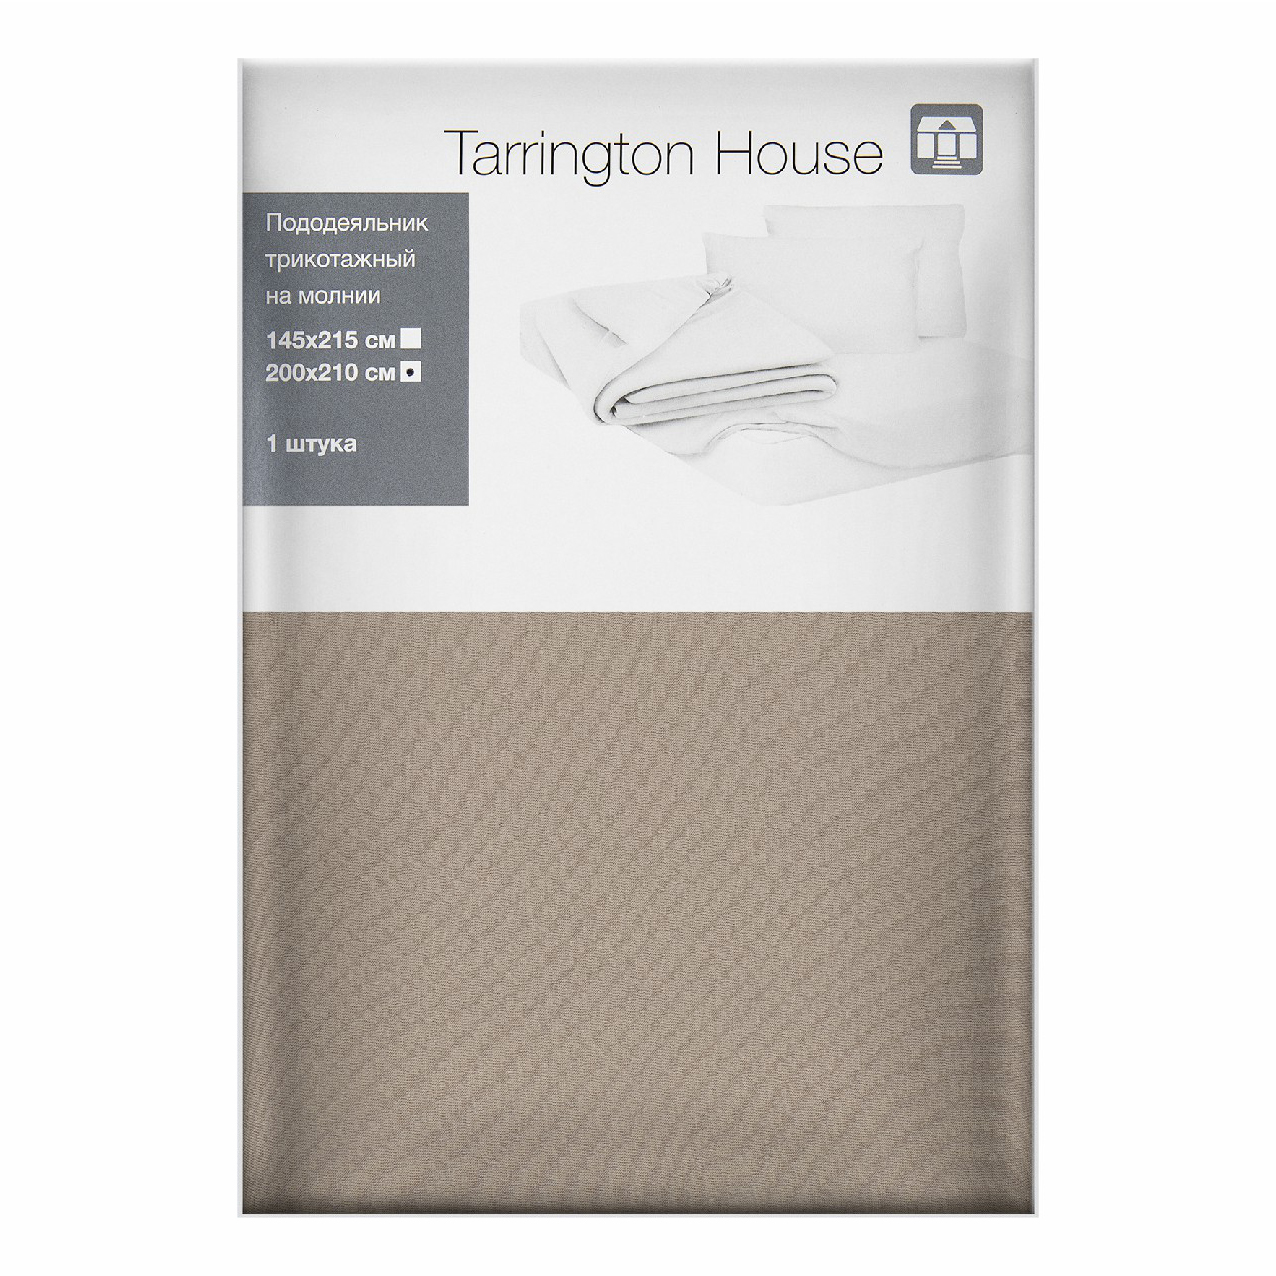 Пододеяльник Tarrington House двуспальный текстиль 200 x 210 см латте